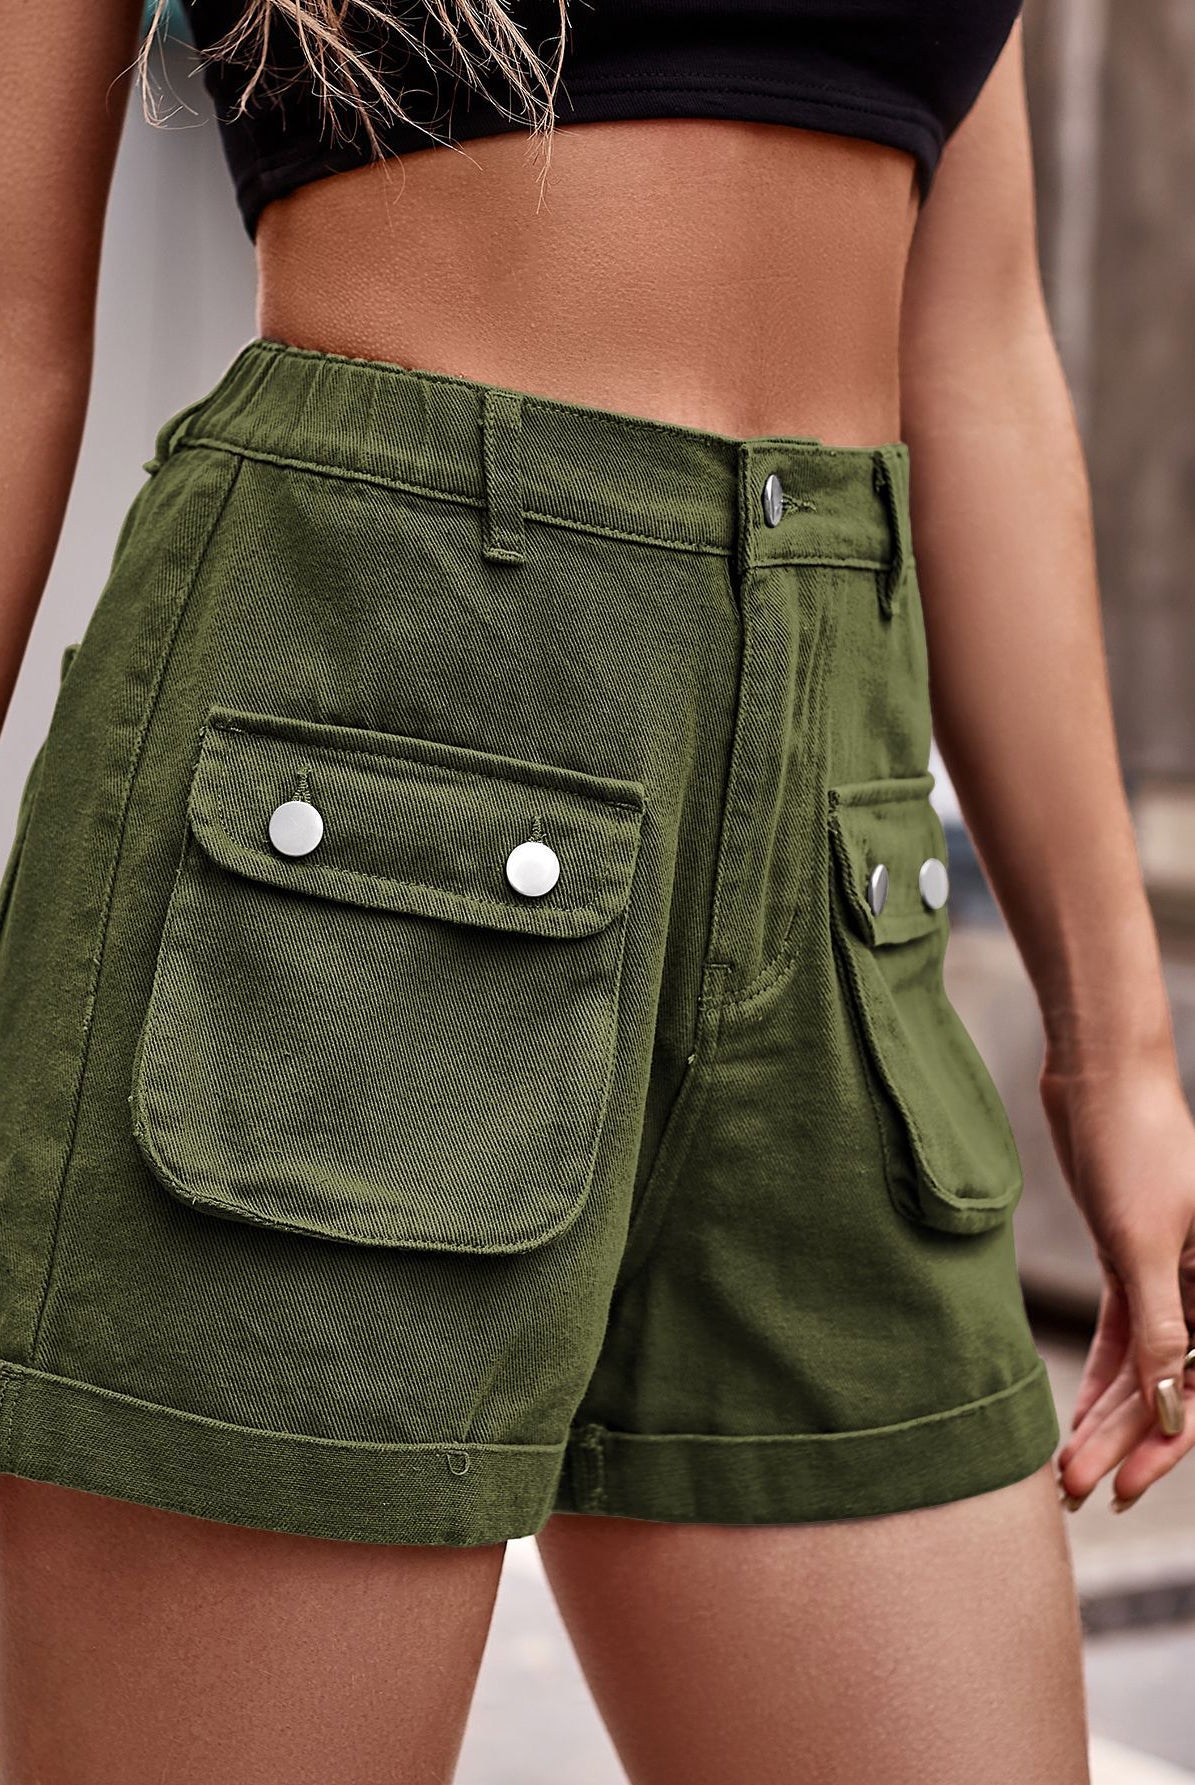 Dim Gray Cuffed Denim Shorts with Pockets Denim